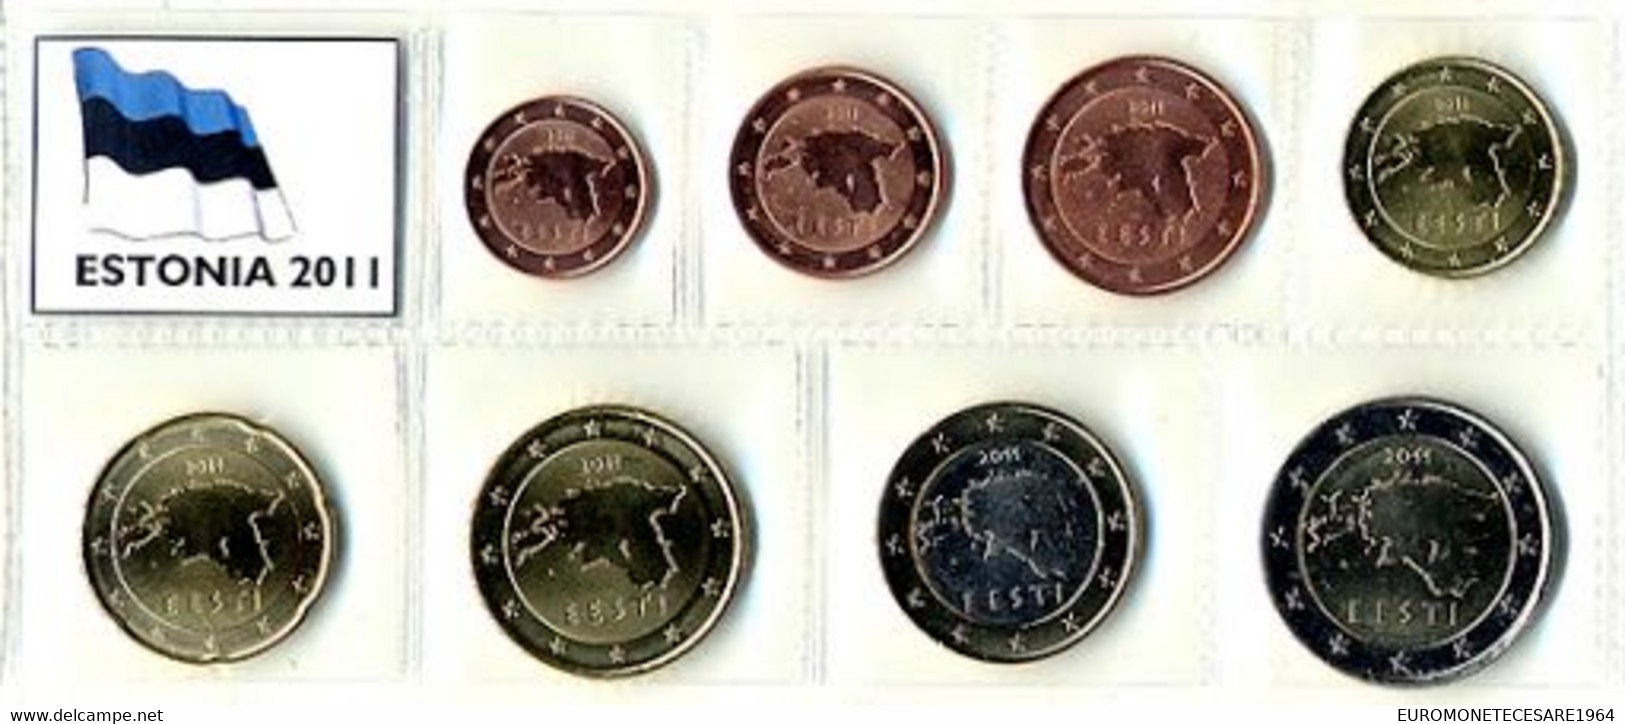 ESTONIA  SERIE EURO  COMPLETA  8 MONETE IN BLISTER   FIOR DI CONIO     B.U. FROM ROLLS - Estonia